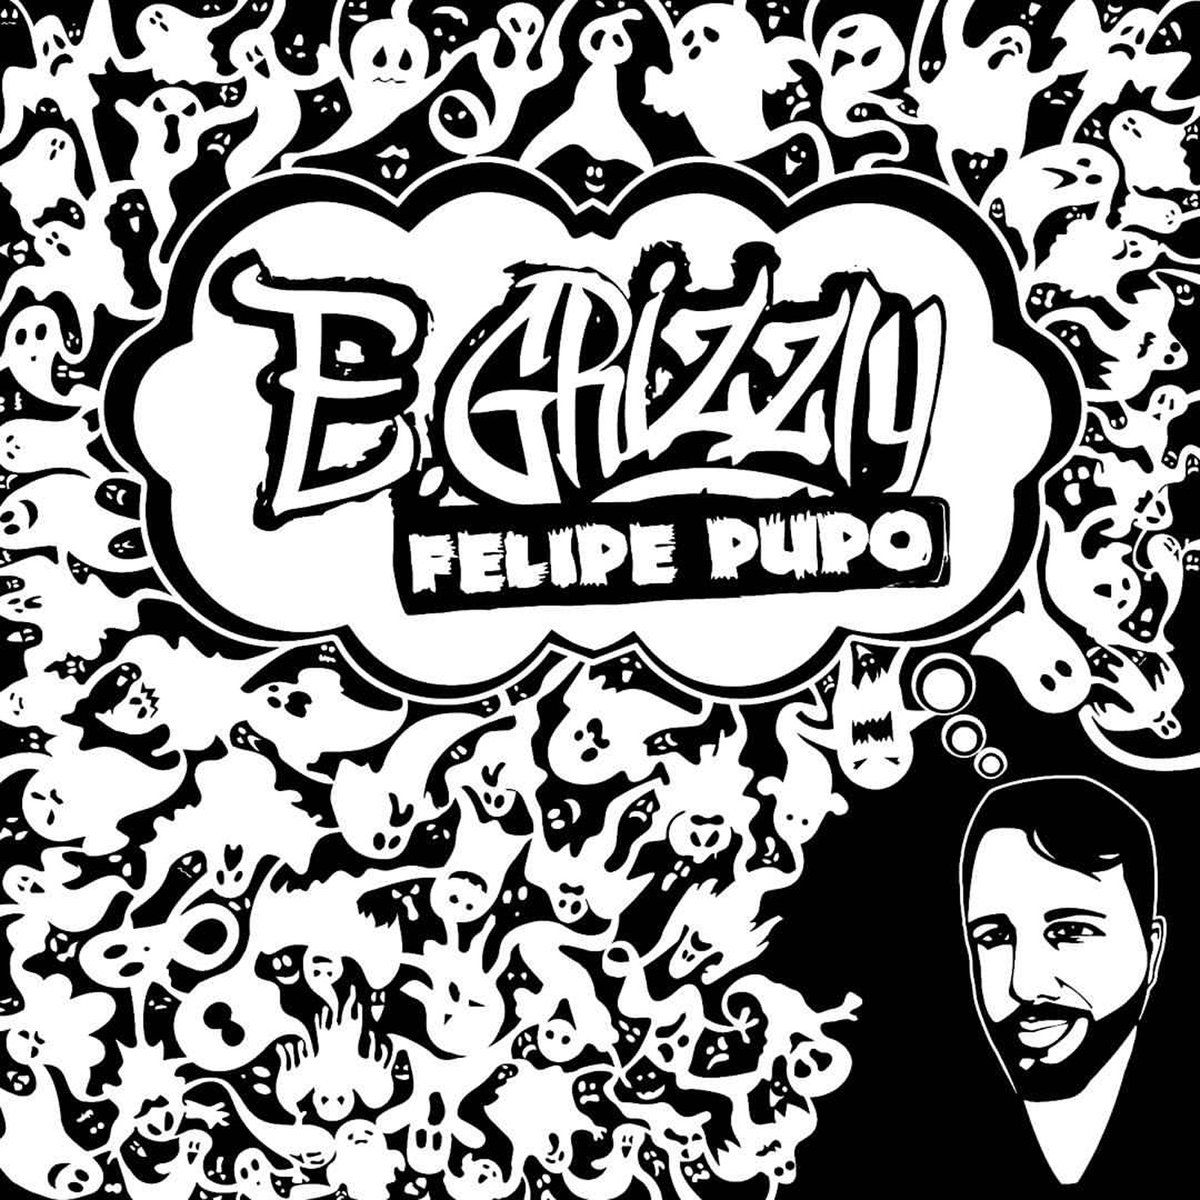 E. Grizzly - Felipe Pupo (Album)